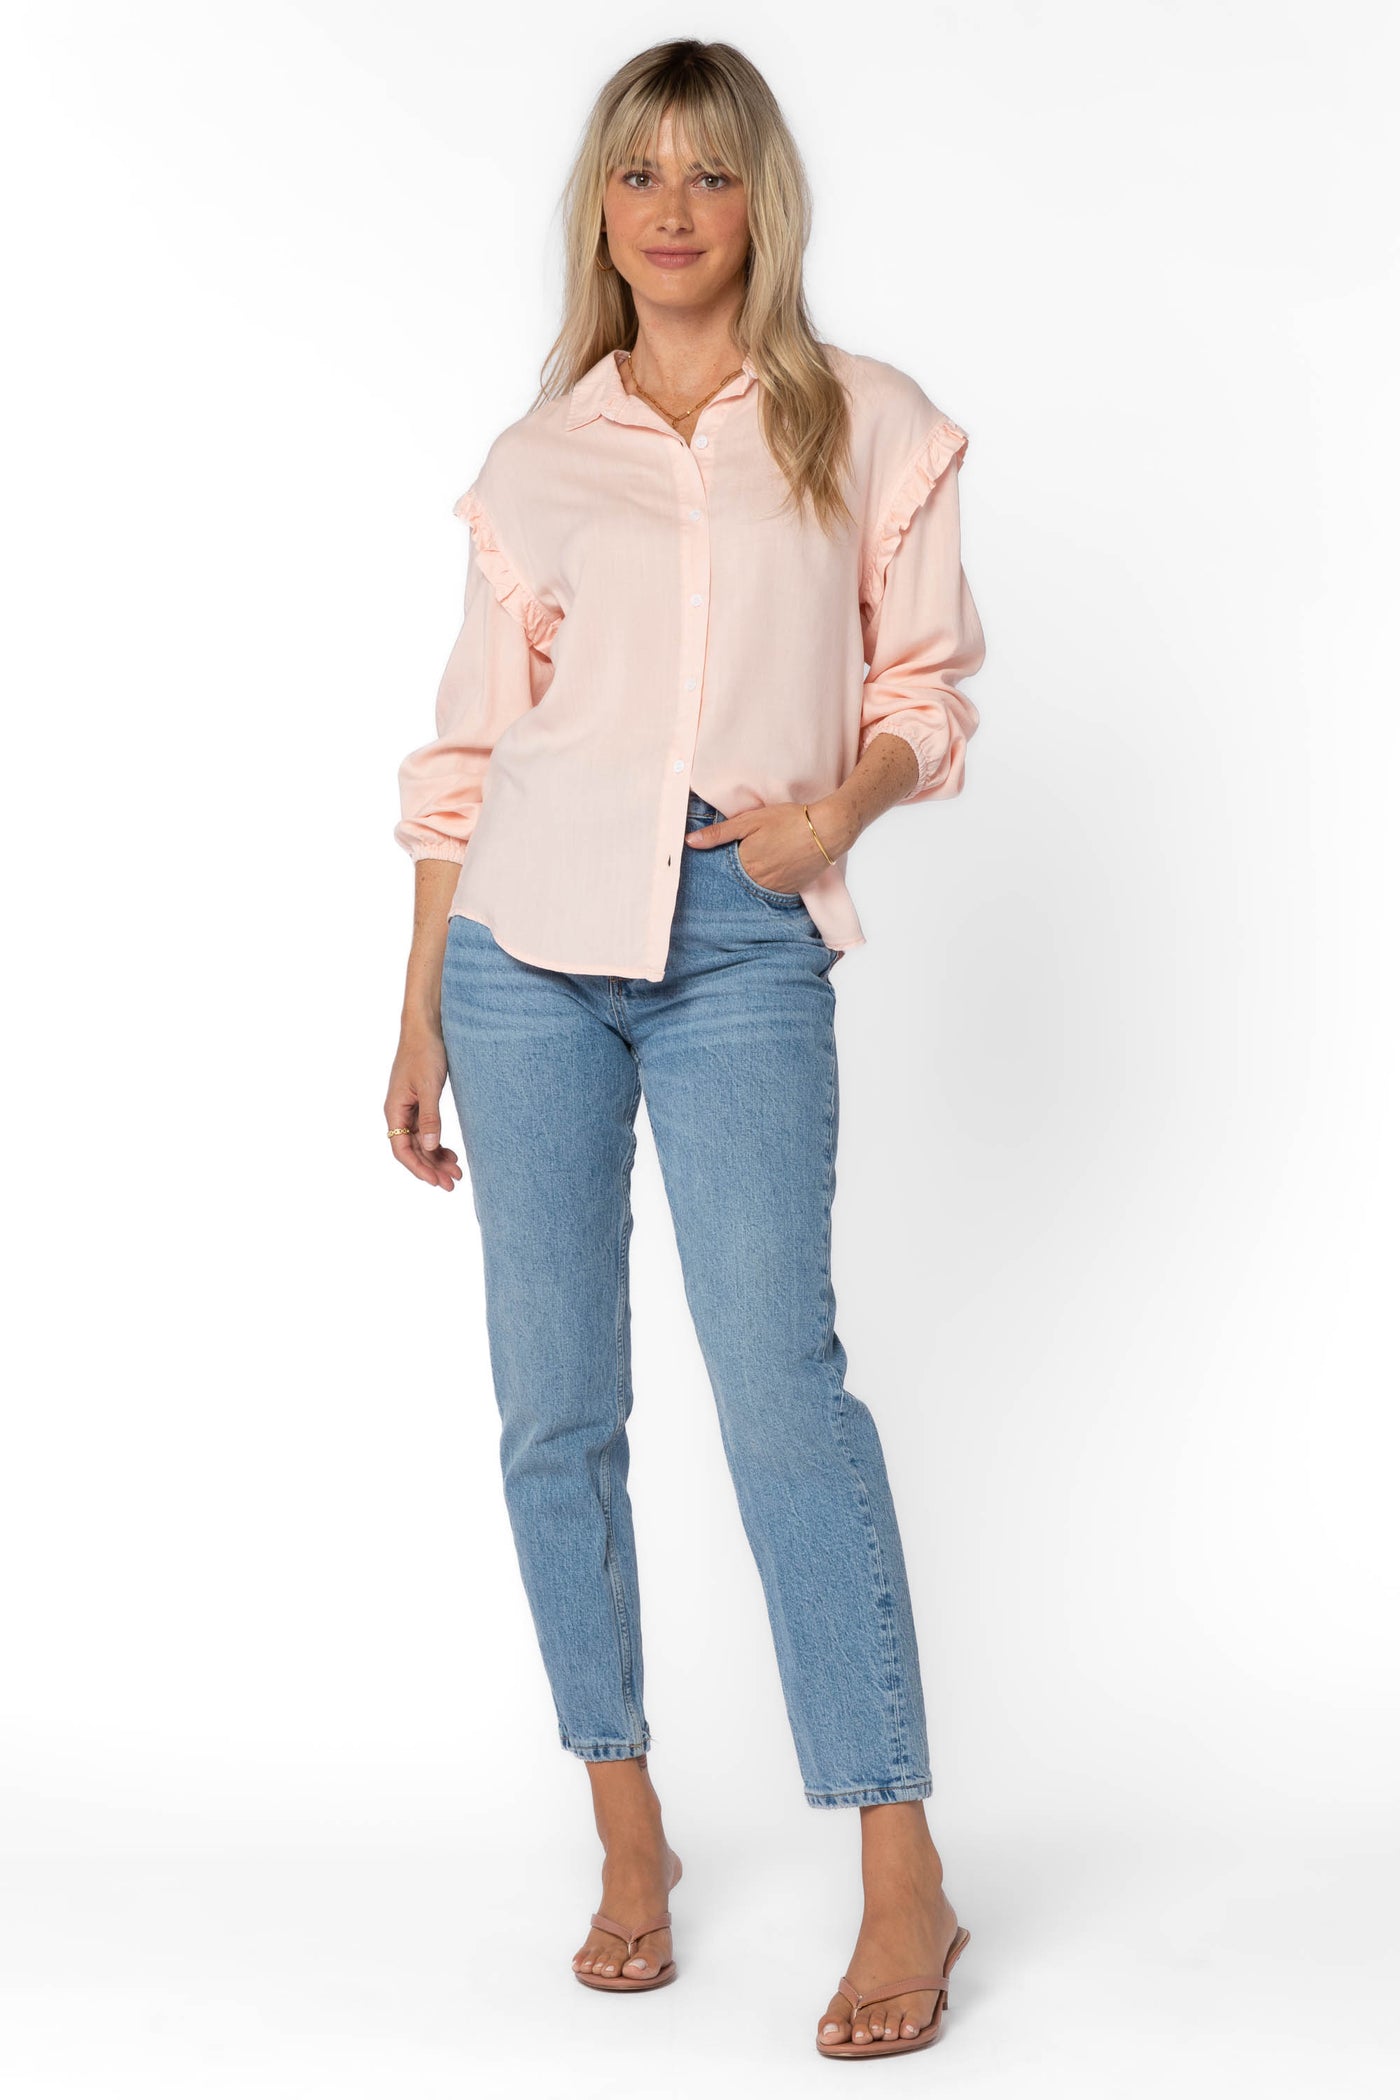 Sylvie Baby Pink Shirt - Tops - Velvet Heart Clothing